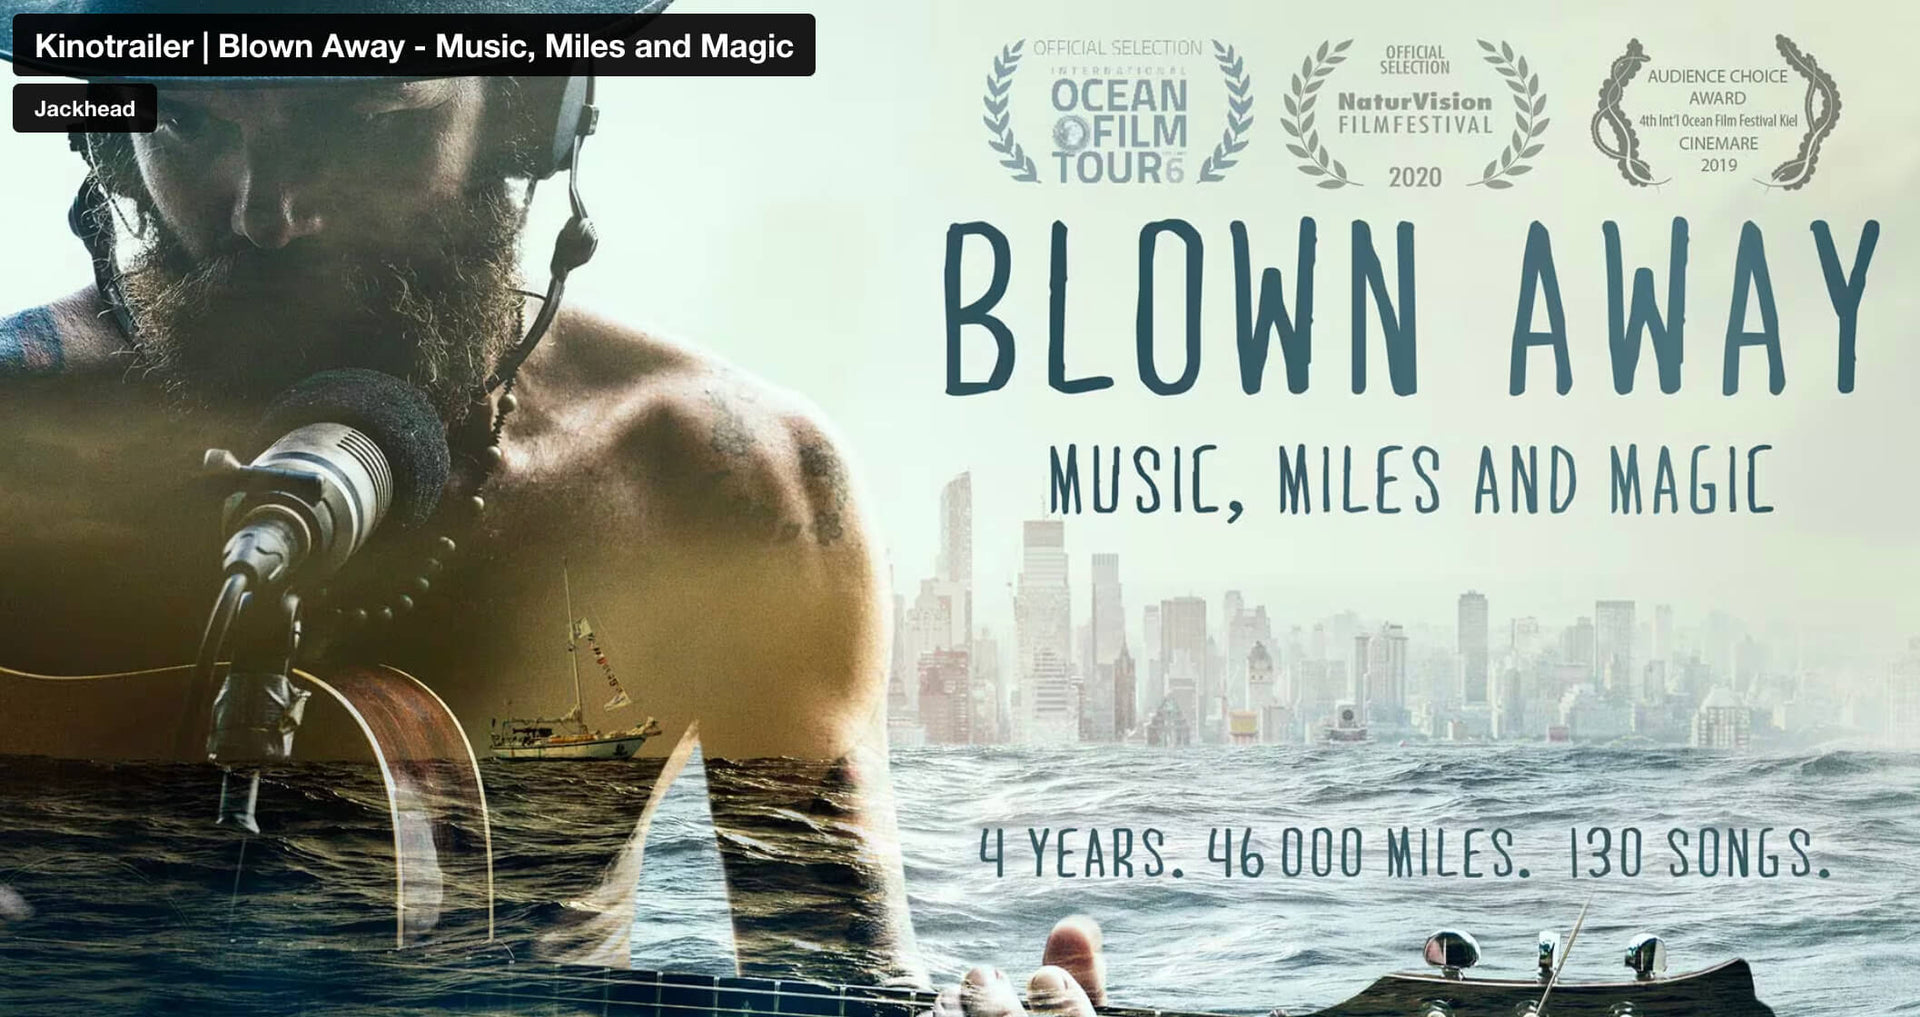 Video laden: ‚Blown Away‘ ist ein Doku-Roadmovie über unsere vierjährige Reise mit Boot und Bus rund um die Welt.